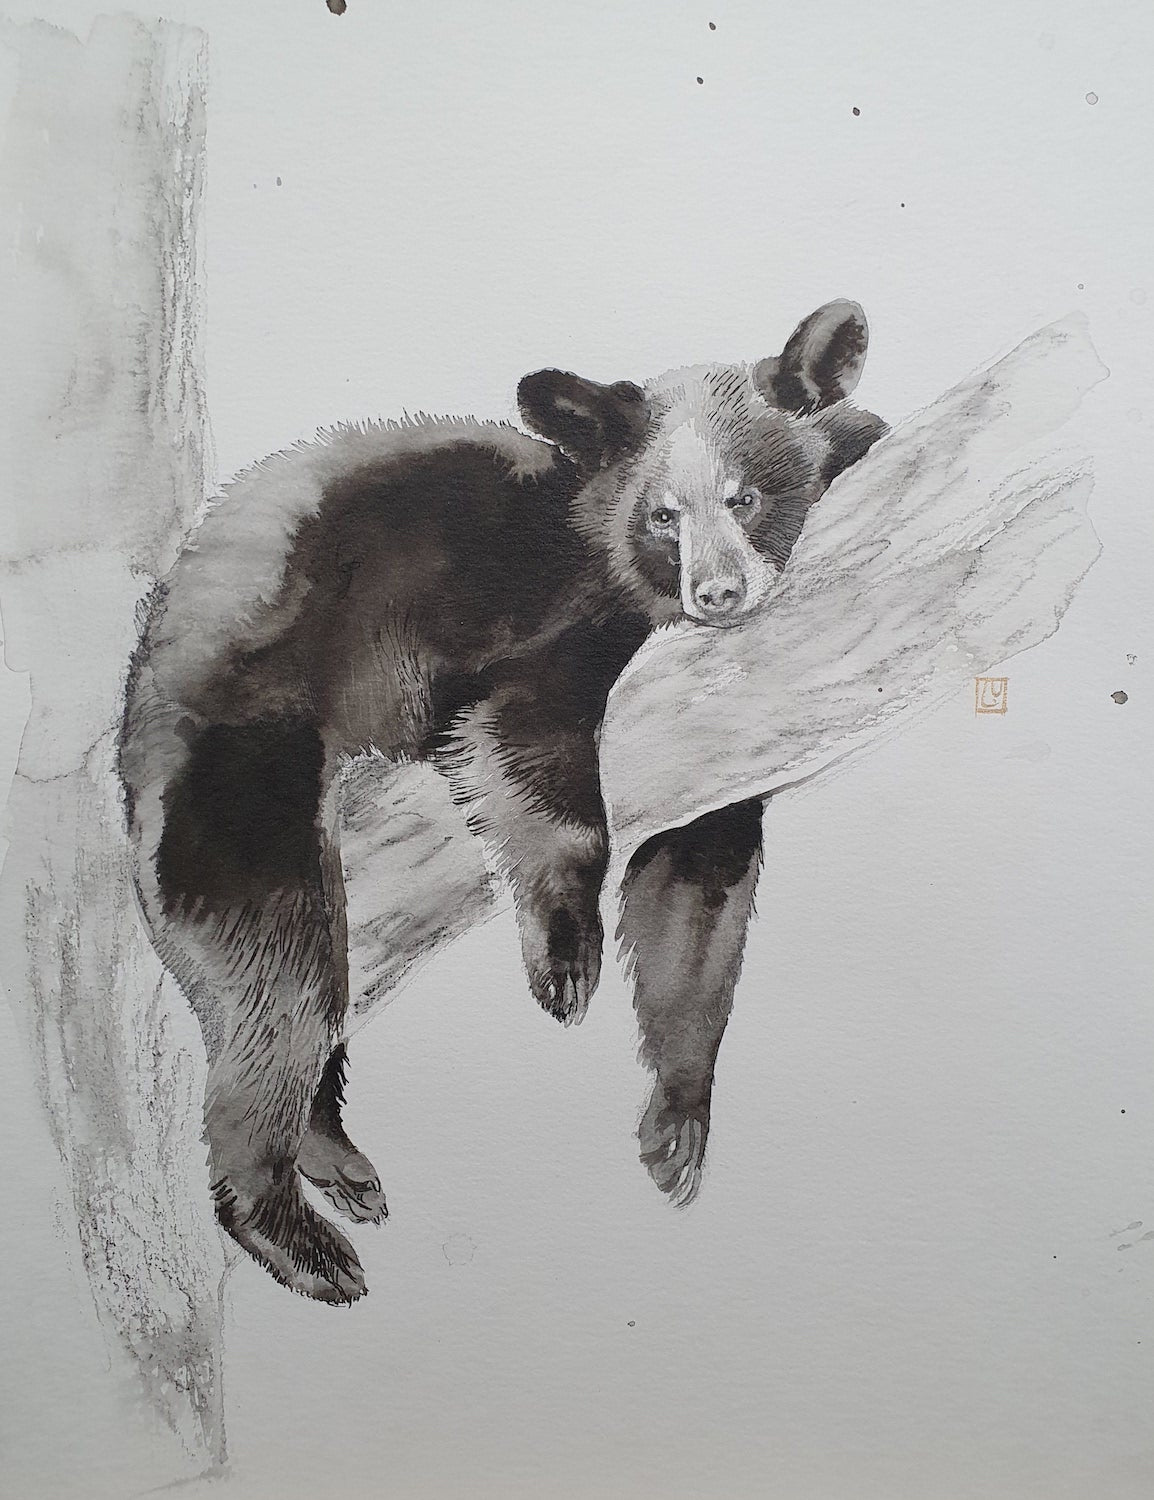 Bear in a Tree